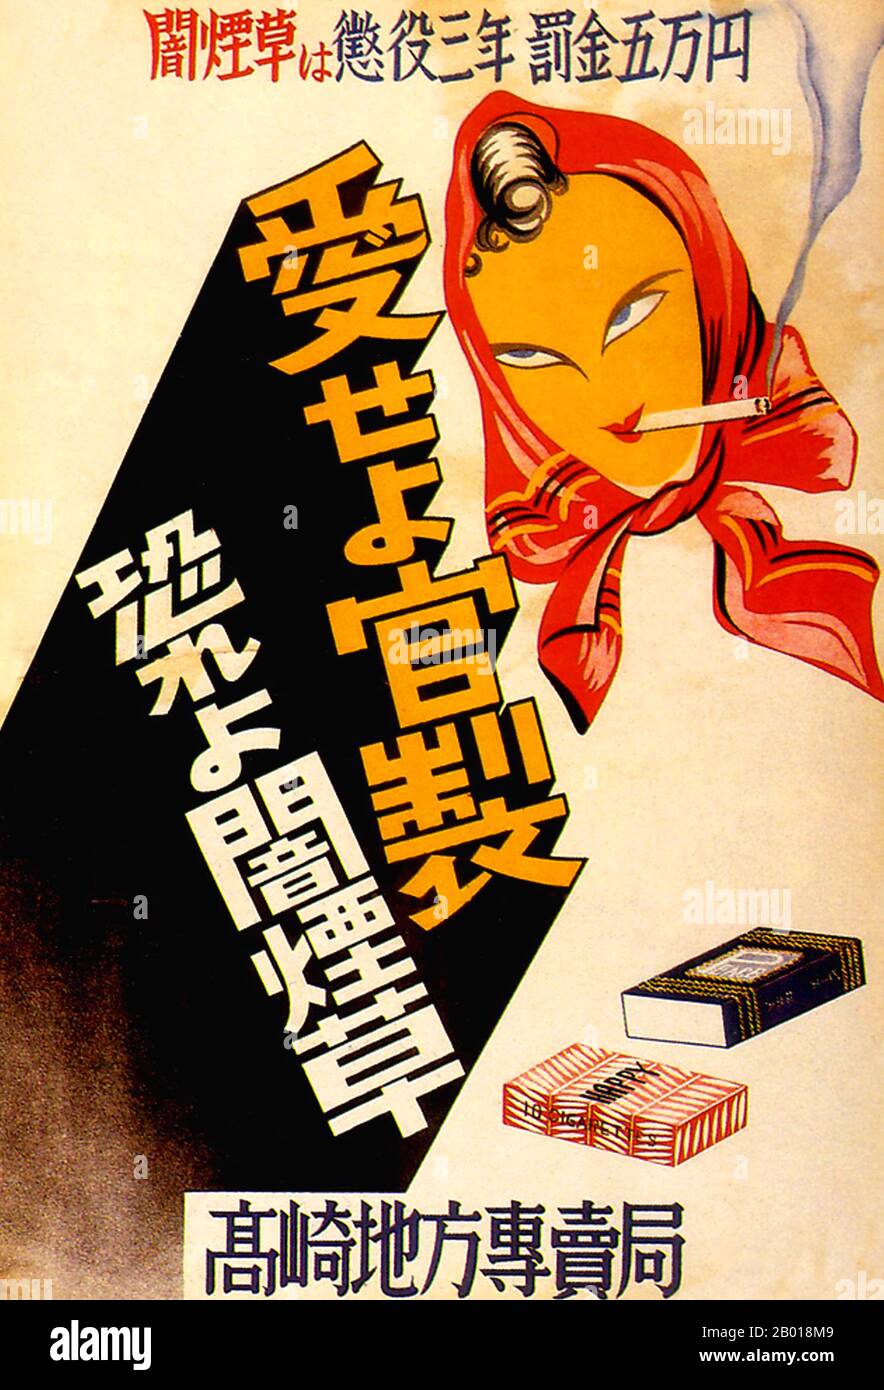 Giappone: Poster del mercato anti-nero del periodo di occupazione alleata del secondo dopoguerra (1945-1951), 1948. Messaggio: "I violatori si trovano a tre anni di prigione, 50.000 yen di multa". Foto Stock